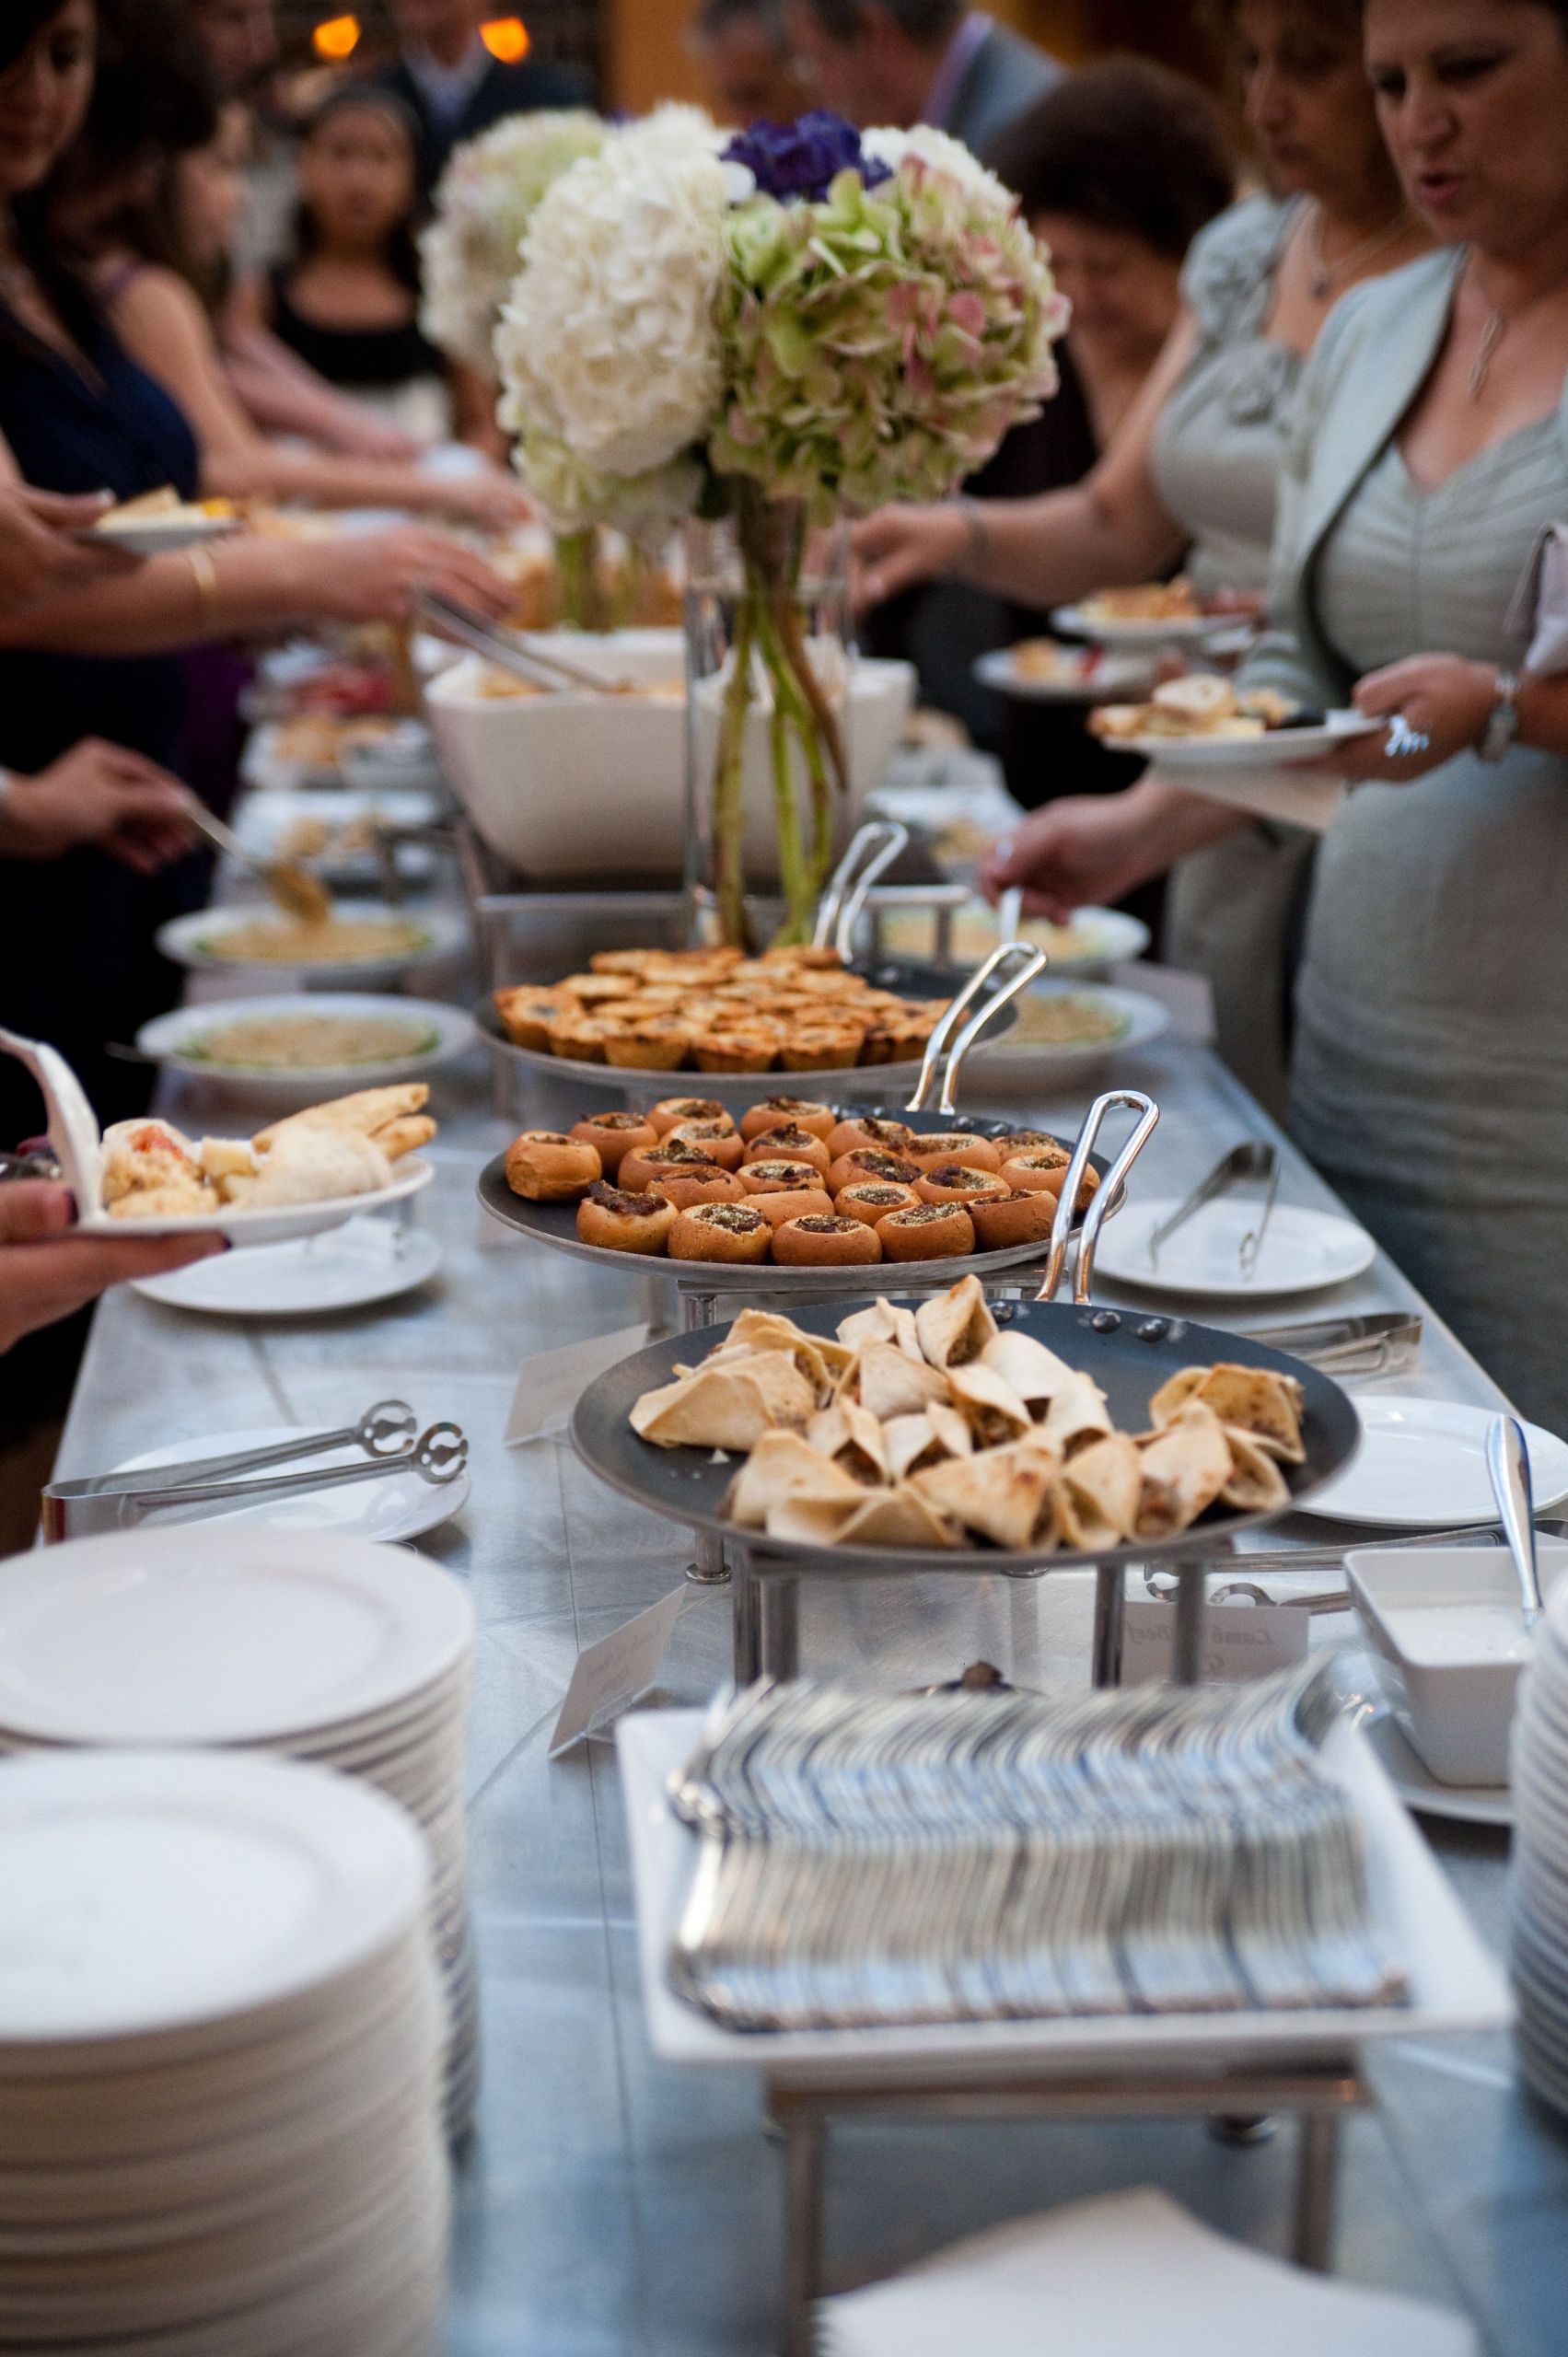 Wedding Buffet Menu Ideas DIY
 HAVE A WEDDING RECEPTION THAT’S ALL YOU